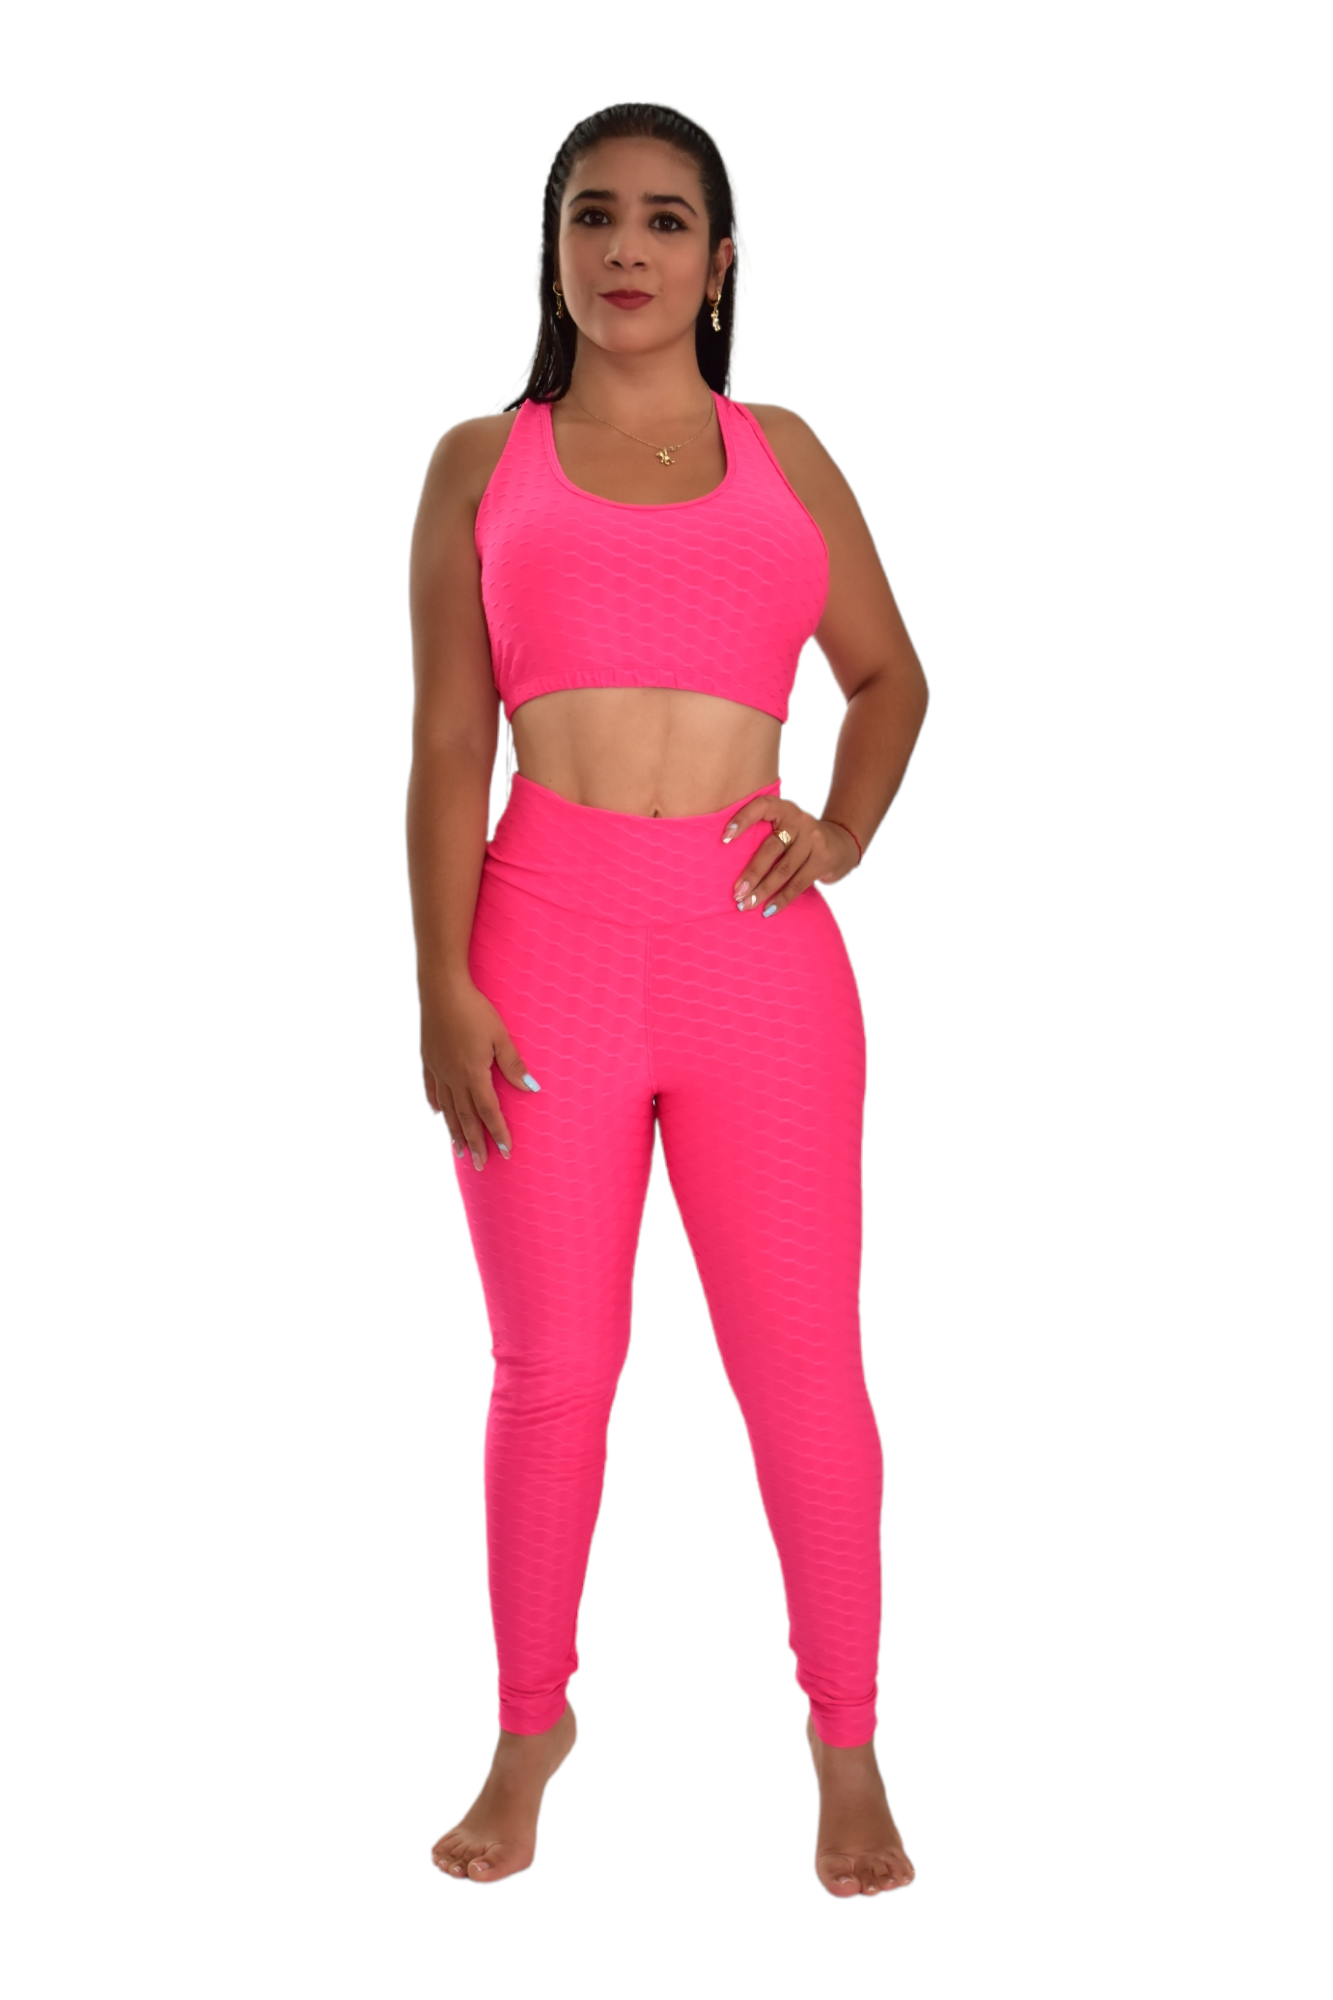 Meta title-leggins push-up mujer 208670210